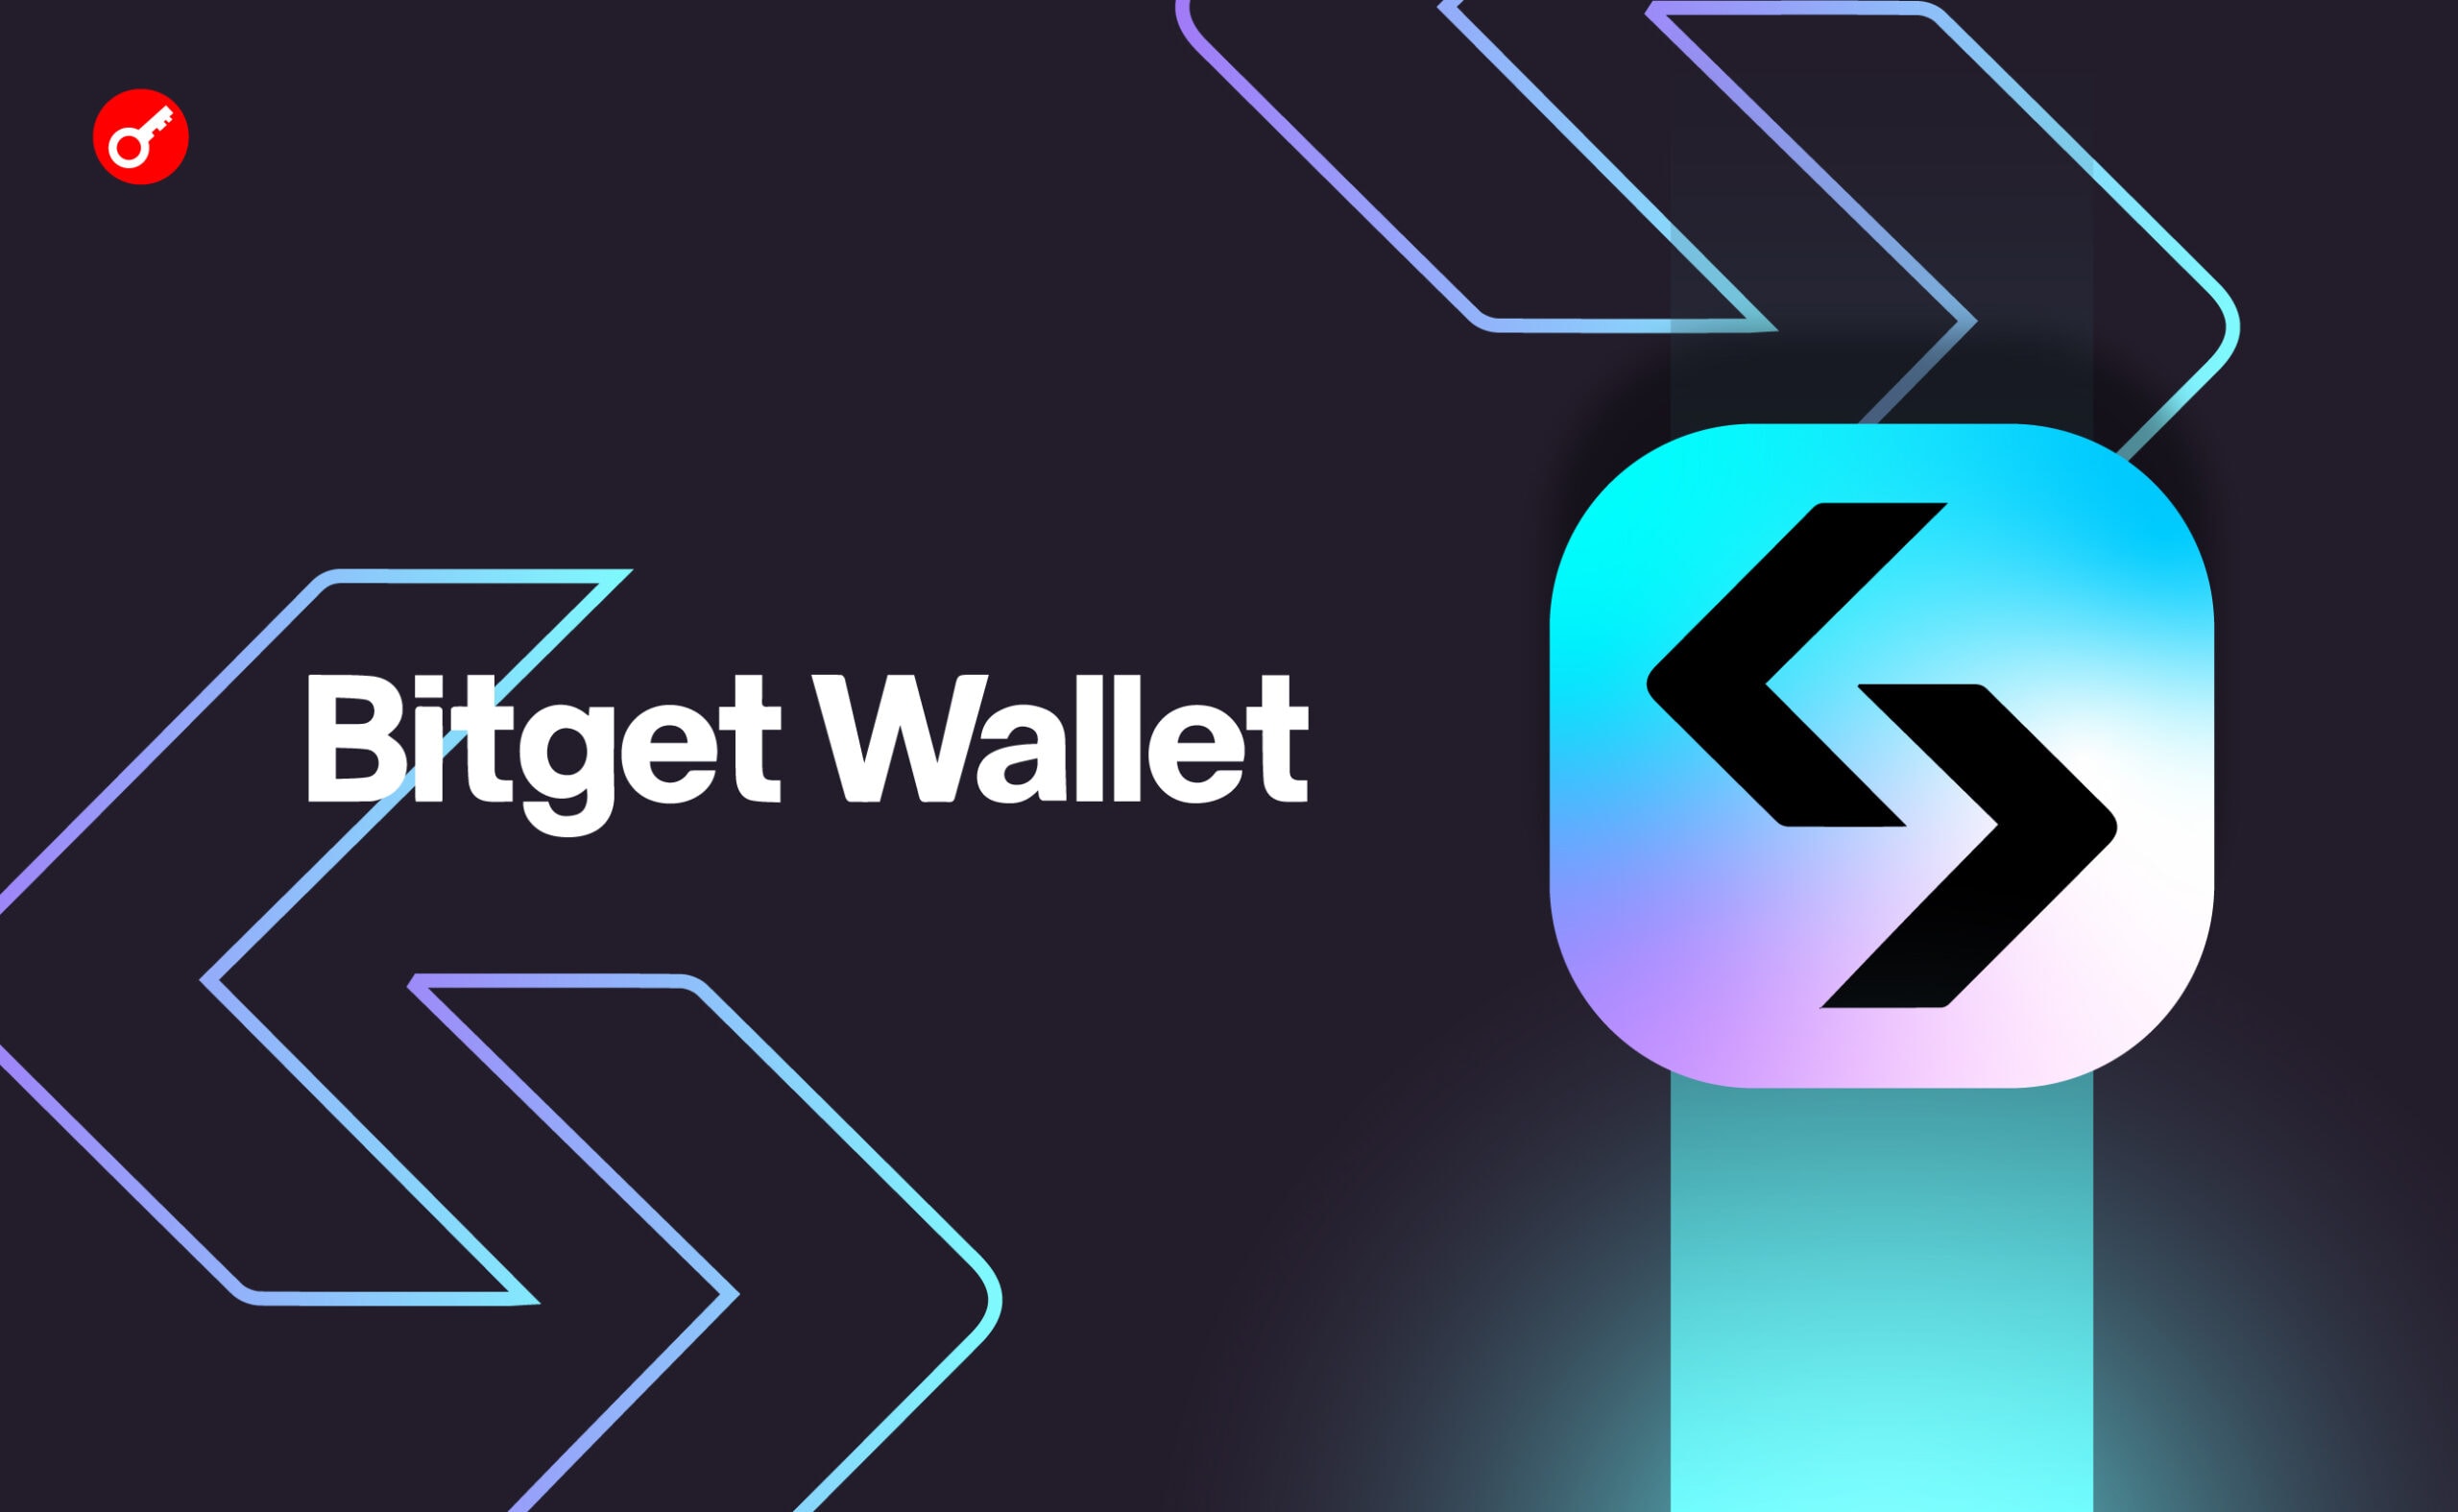 Количество пользователей Bitget Wallet превысило 20 млн. Заглавный коллаж новости.